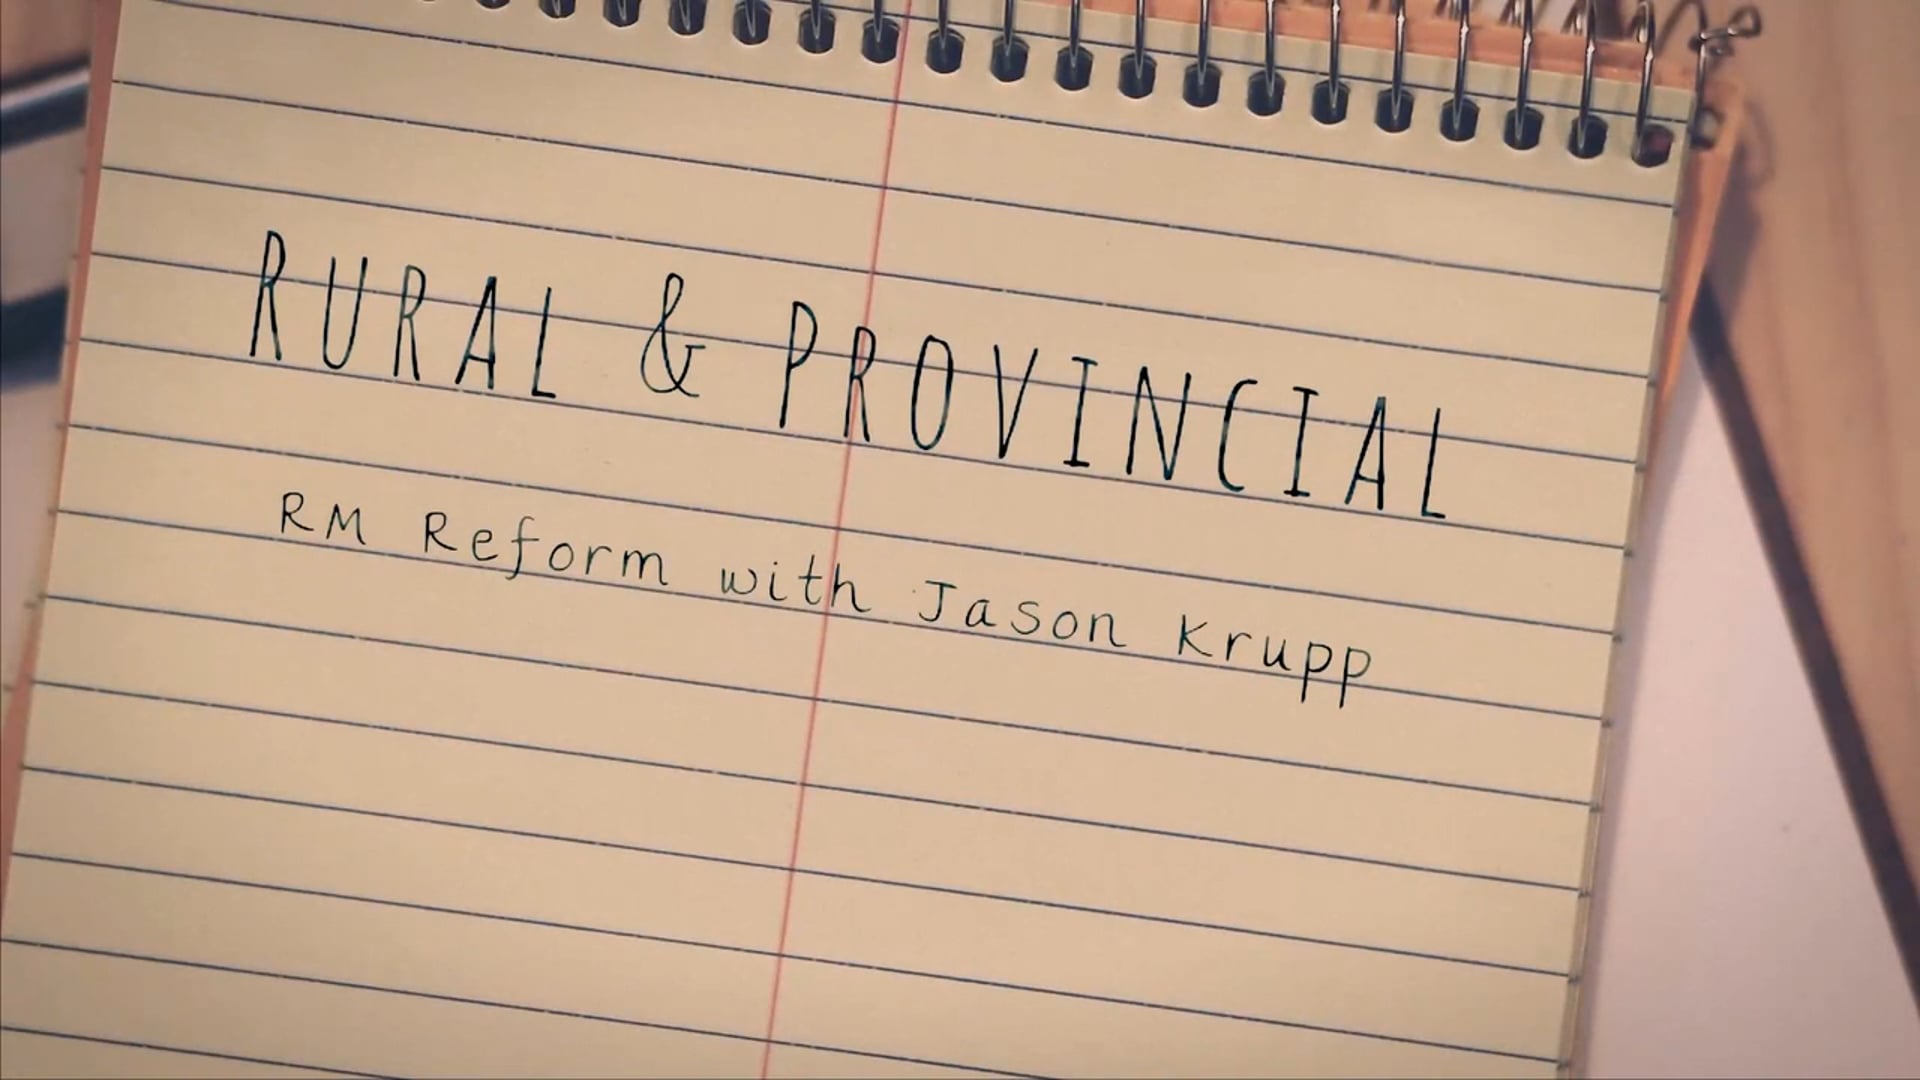 RM Reform with Jason Krupp